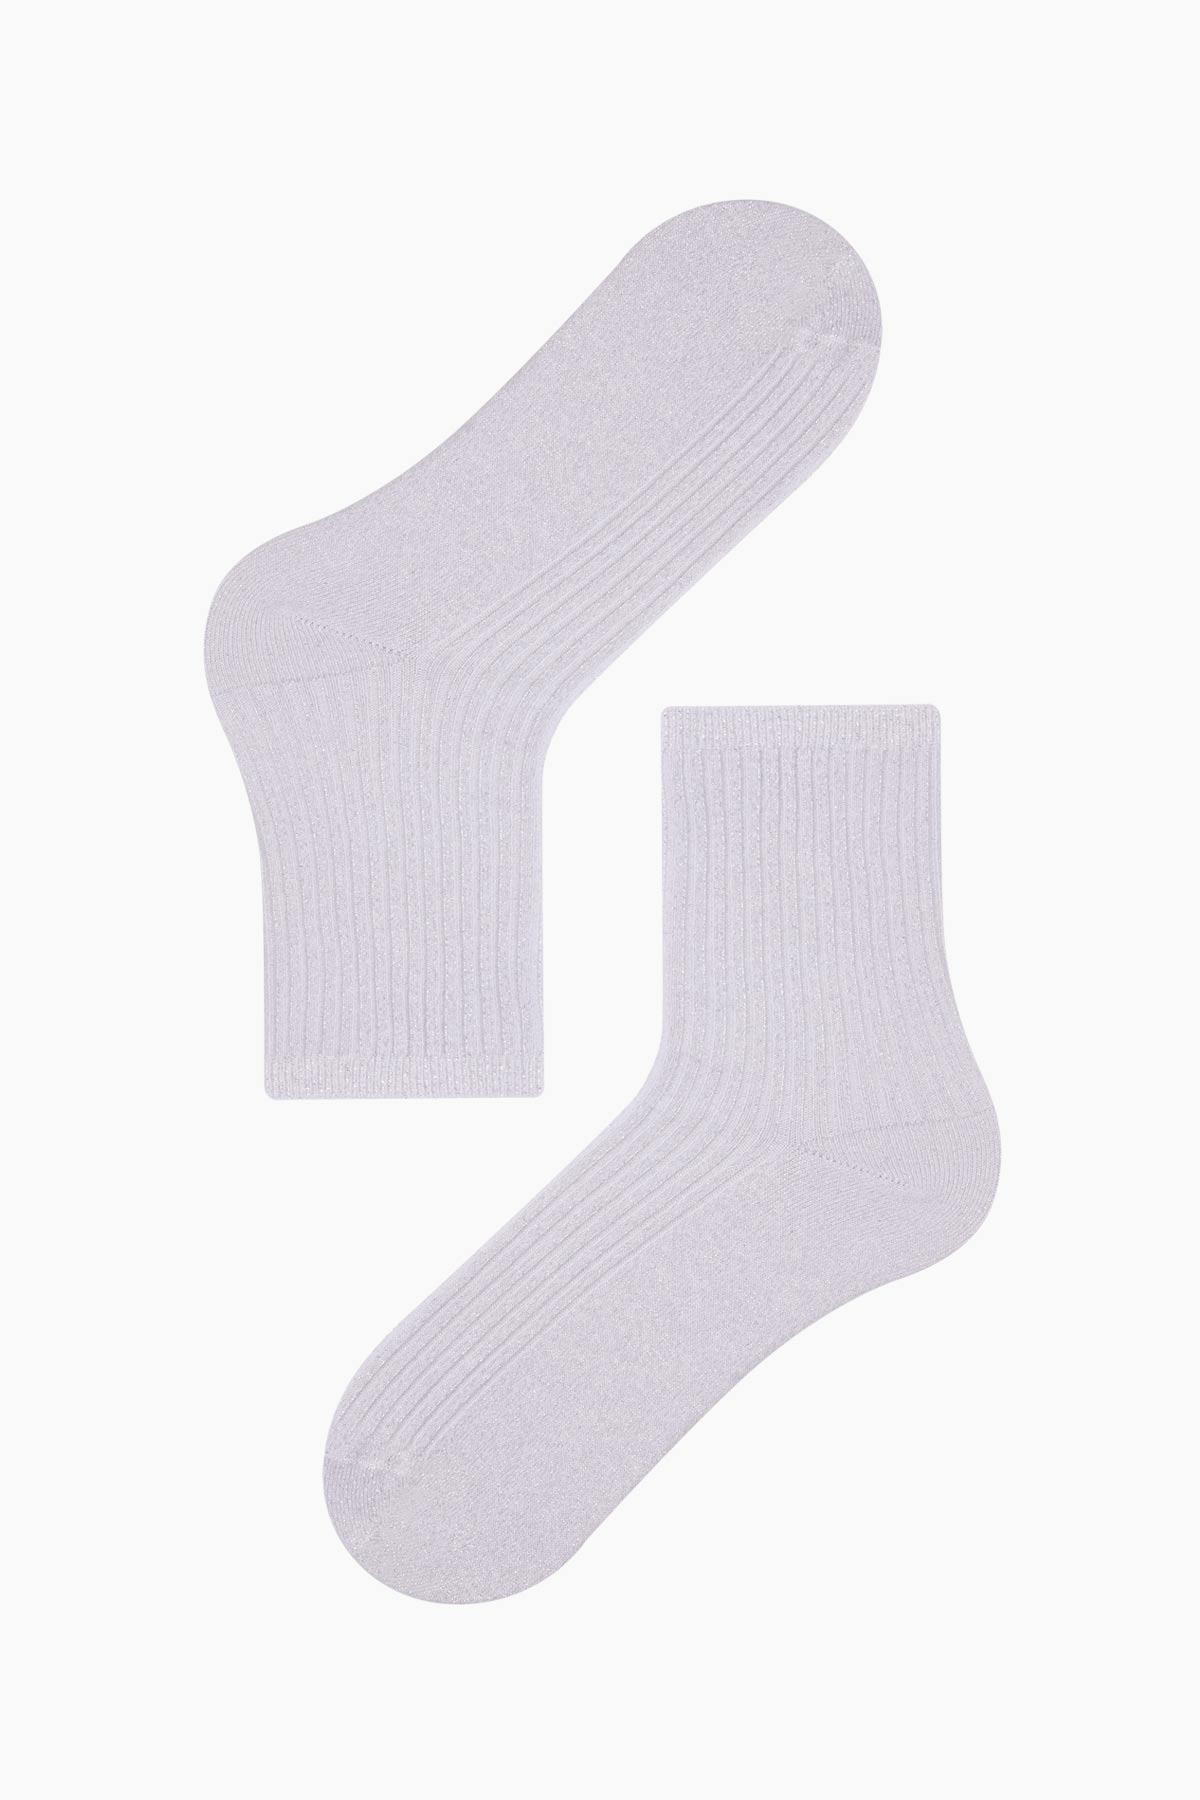 Bross Silvery Women's Socks - Thumbnail